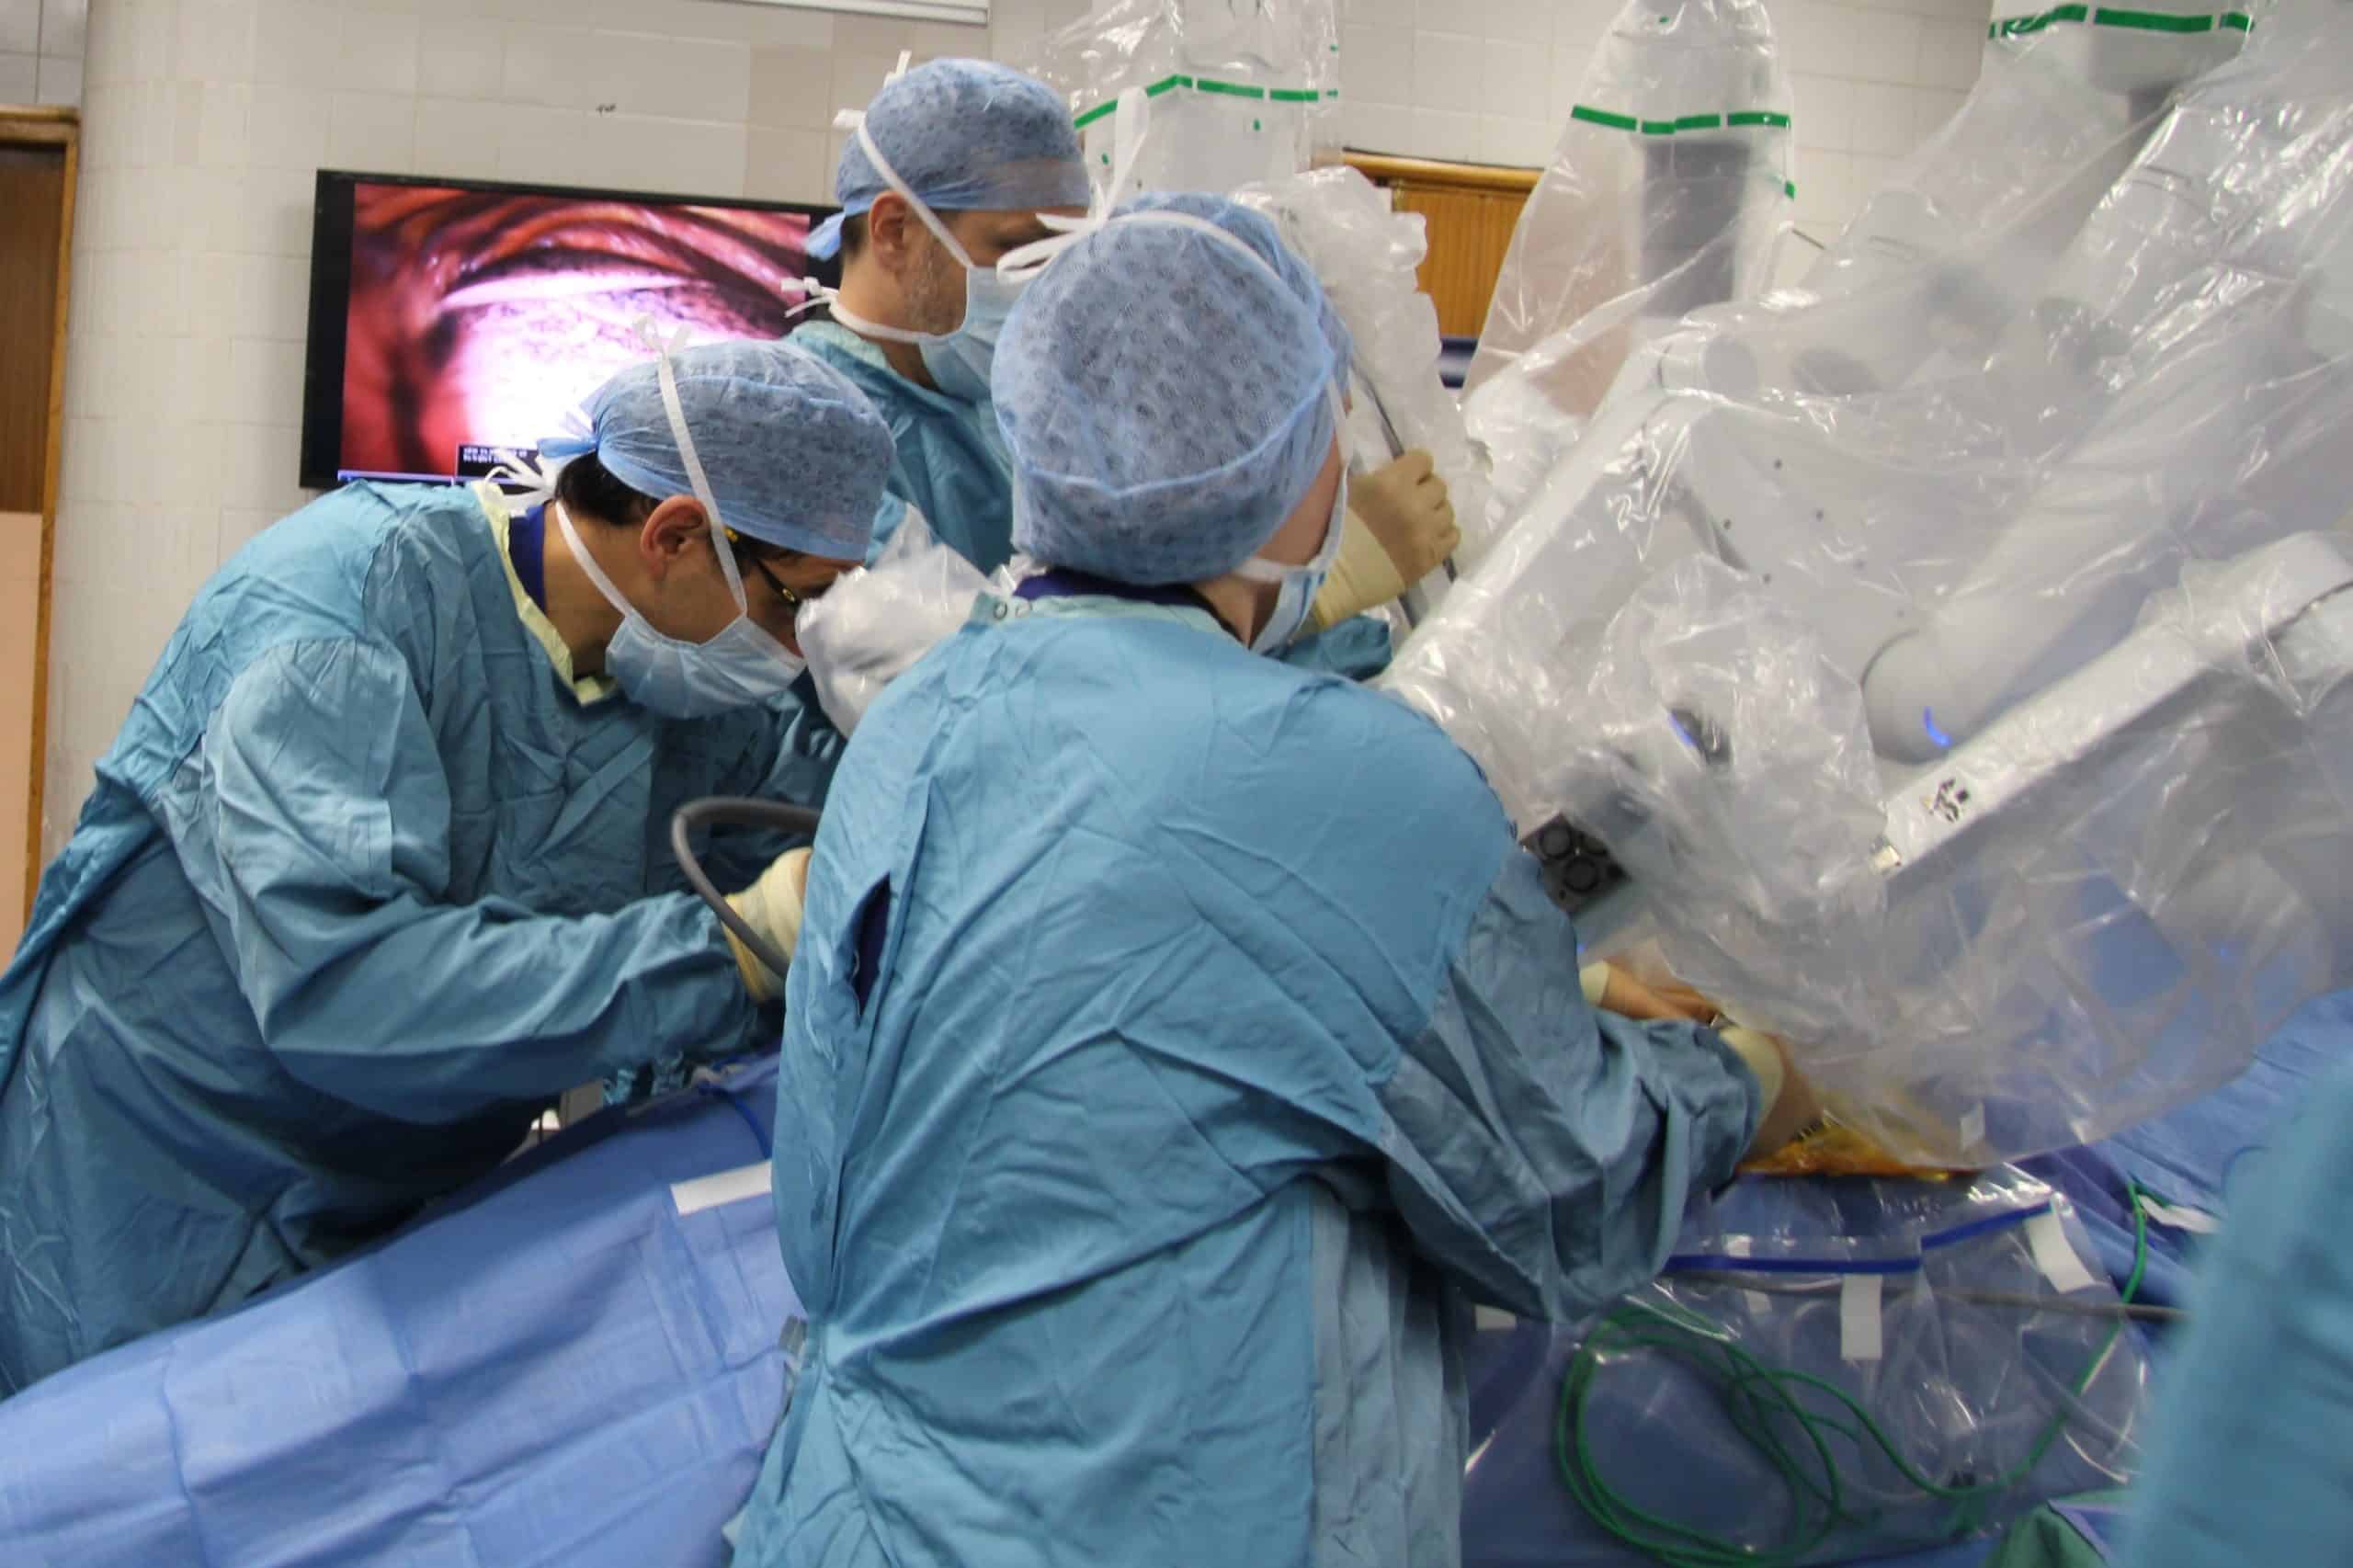 A Da Vinci robot carrying out an operation